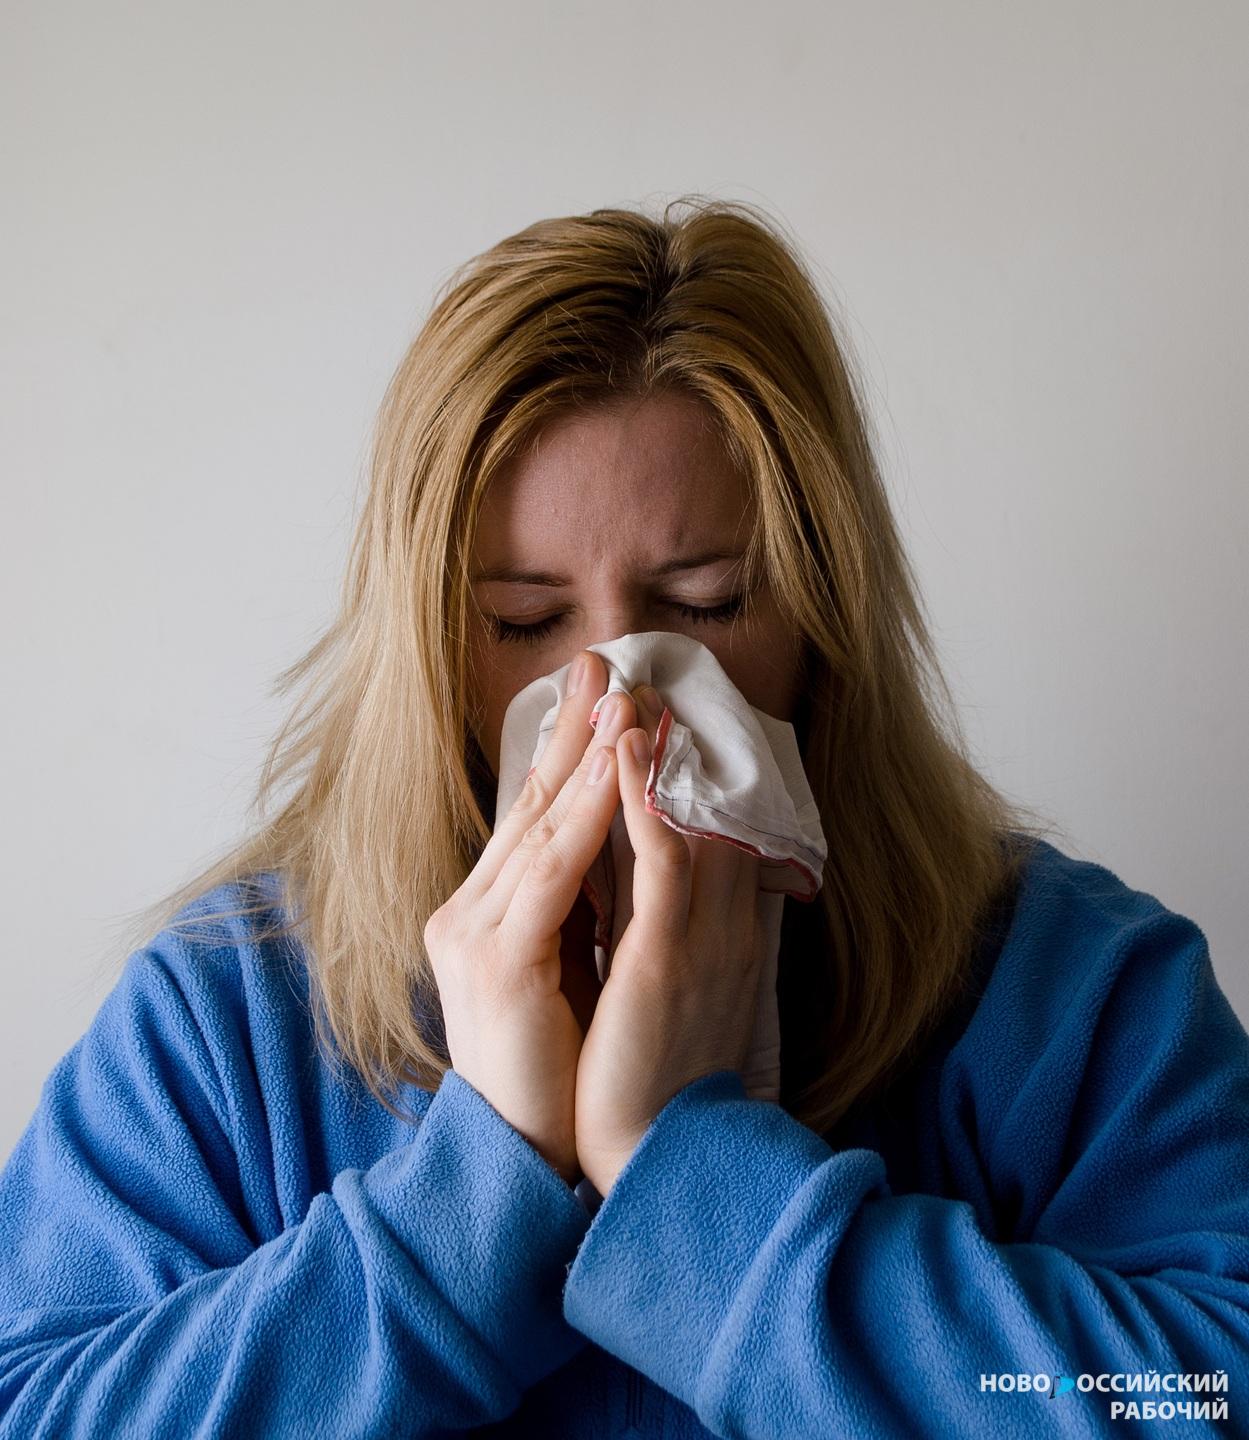 Свиной грипп или просто грипп? Как понять, чем сейчас болеют новороссийцы